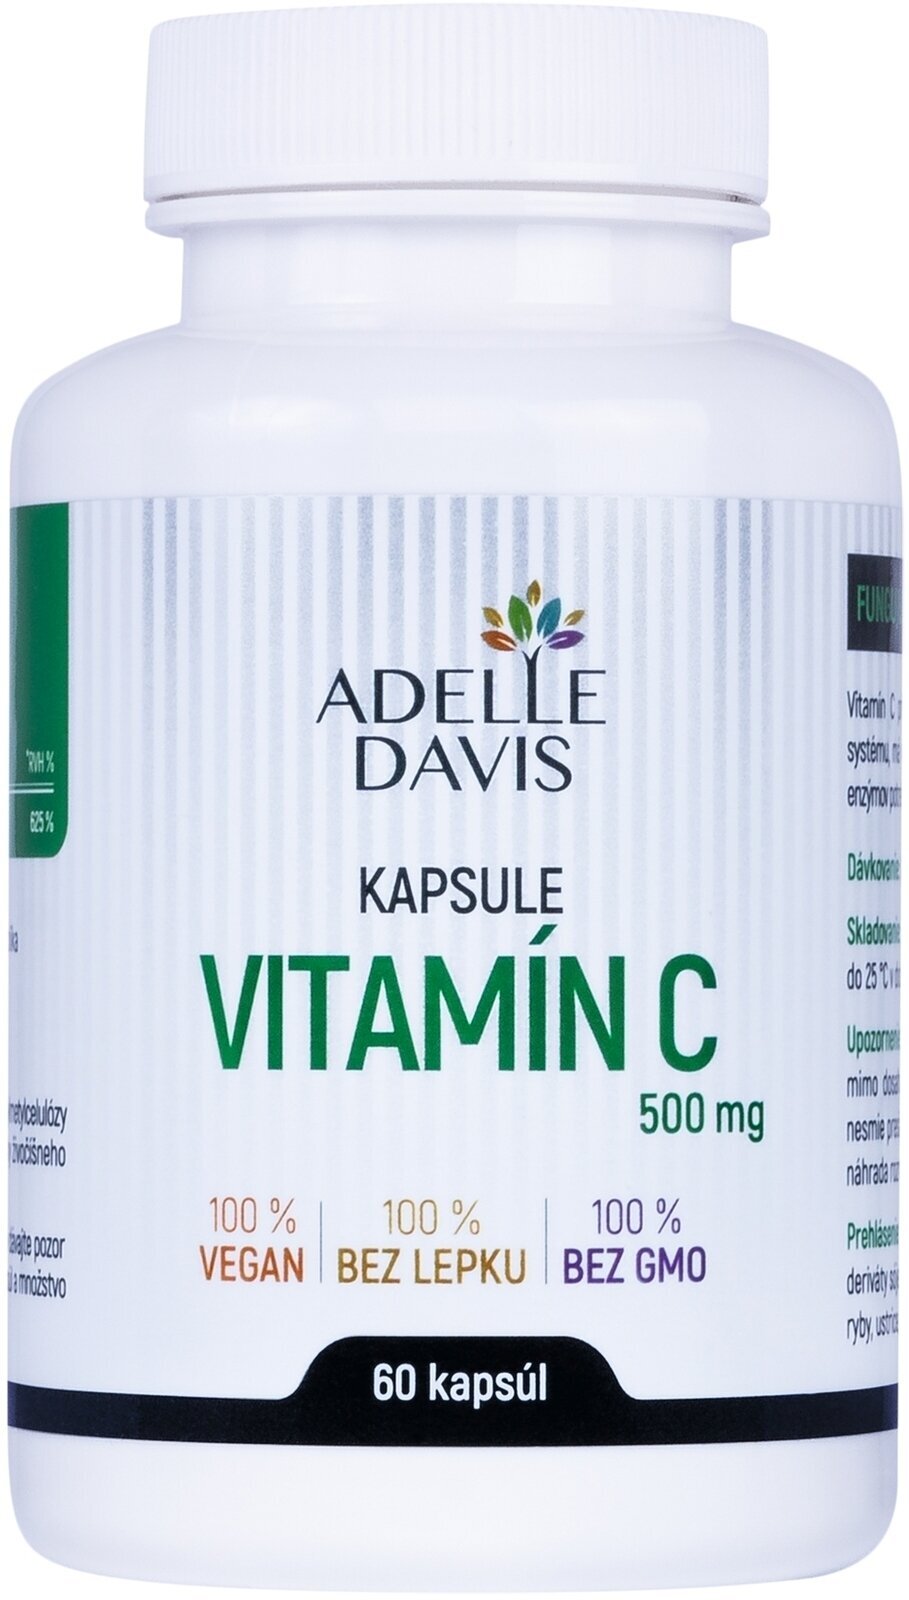 Βιταμίνη C Adelle Davis Vitamin C Βιταμίνη C